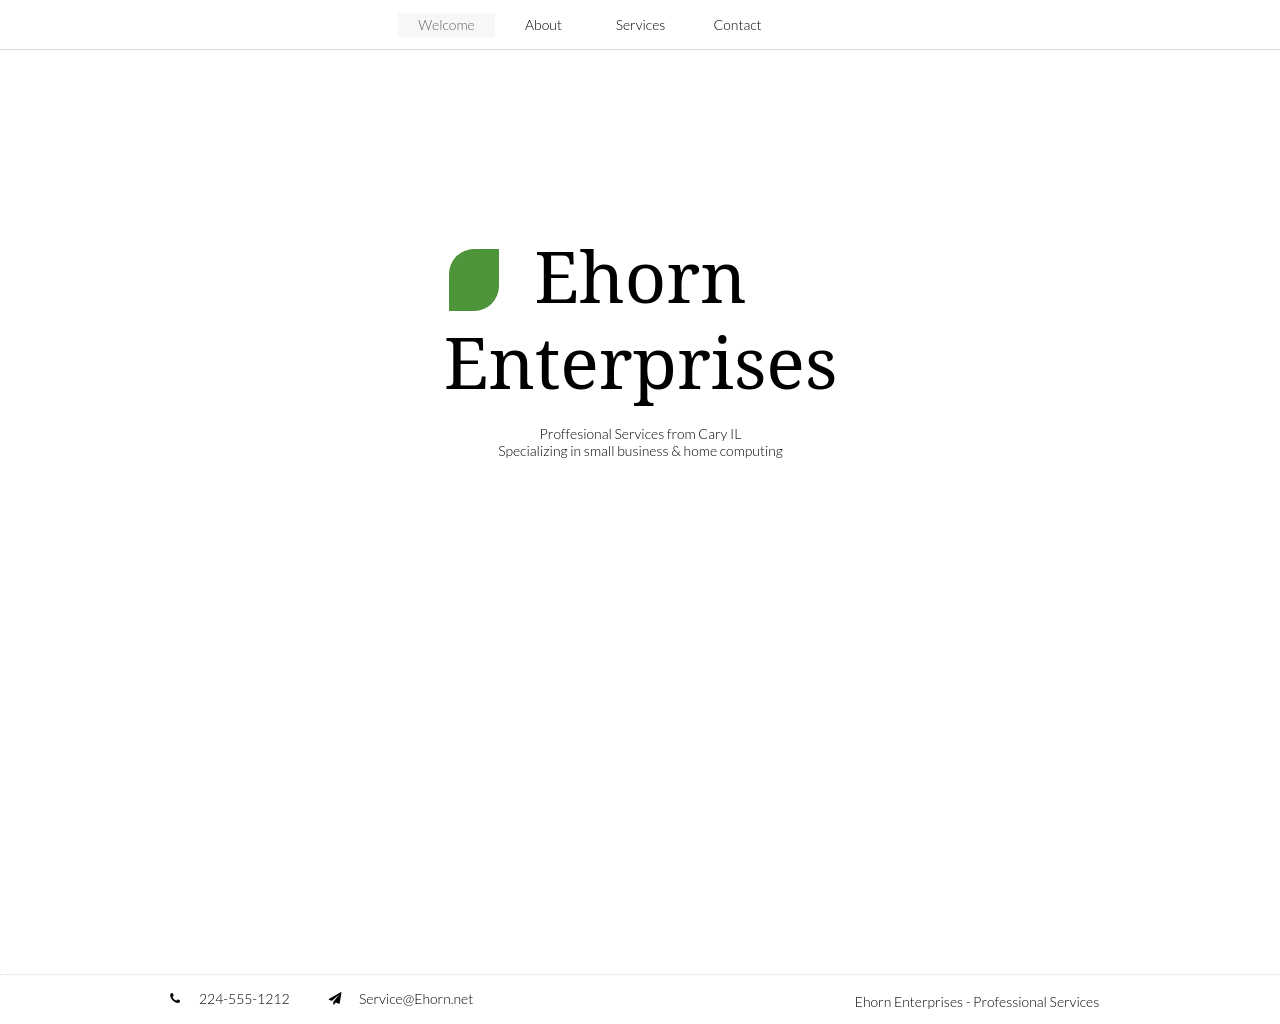 ehorn.net